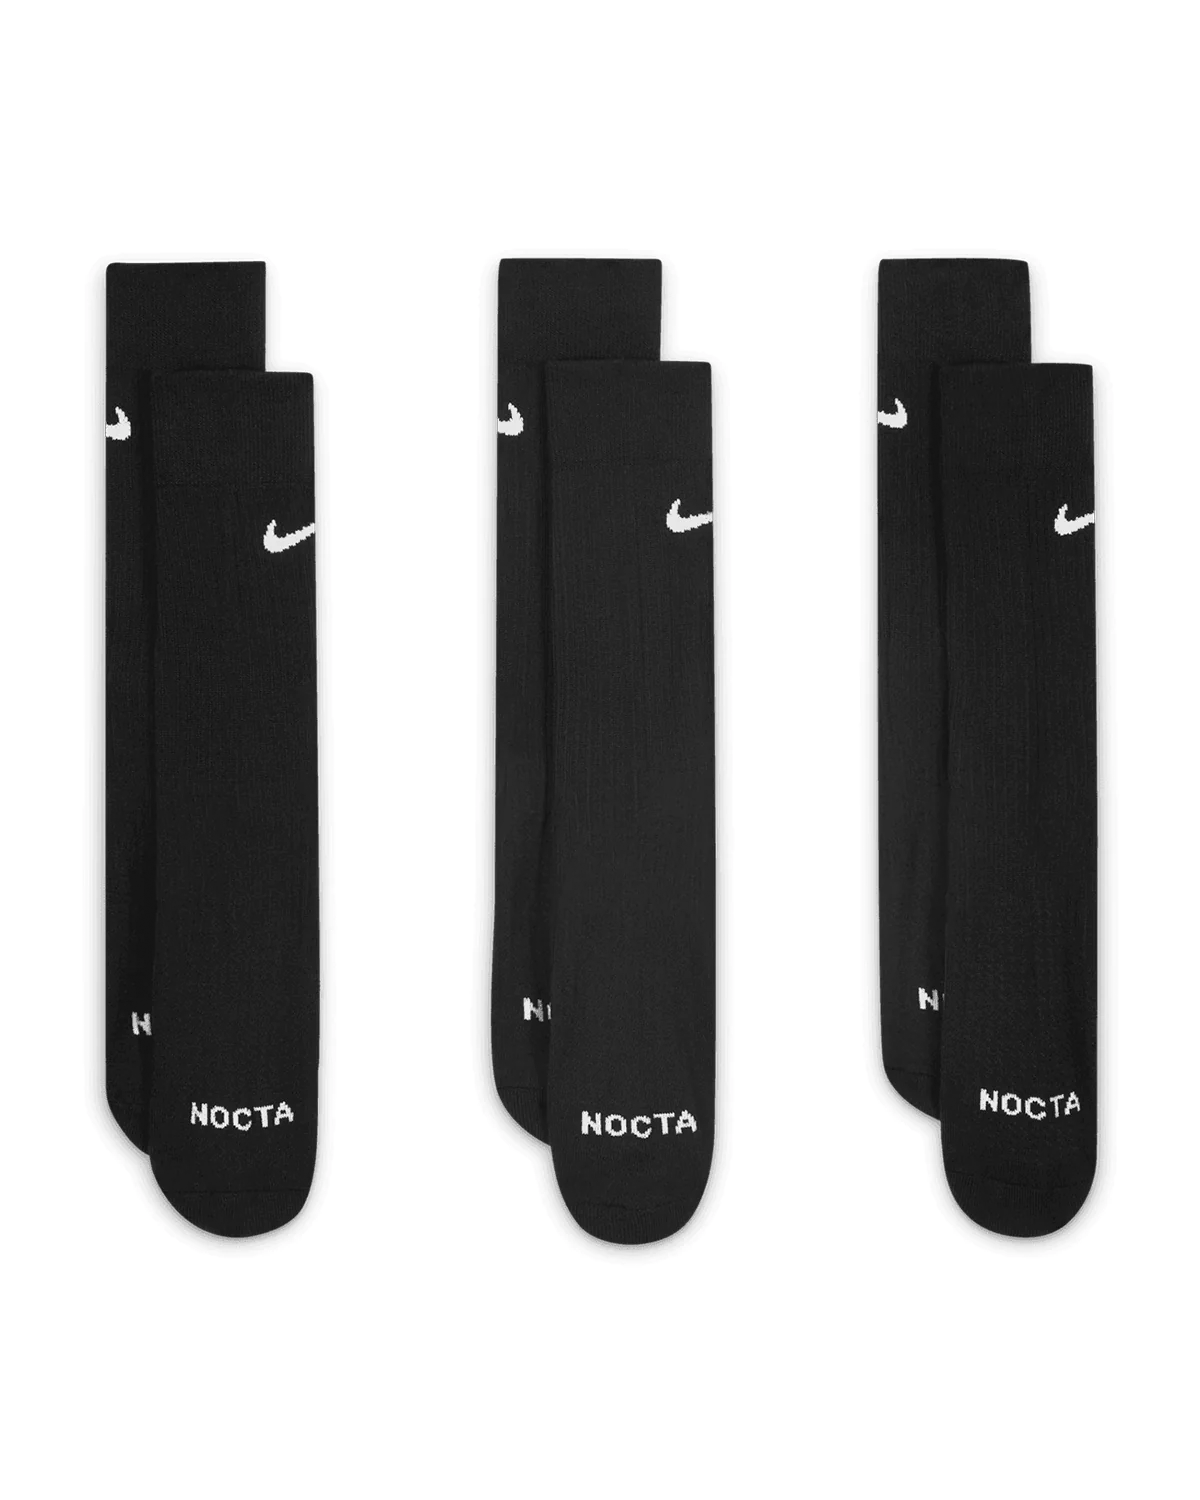 NOCTA NRG Crew Socks 3-Pack Black/White